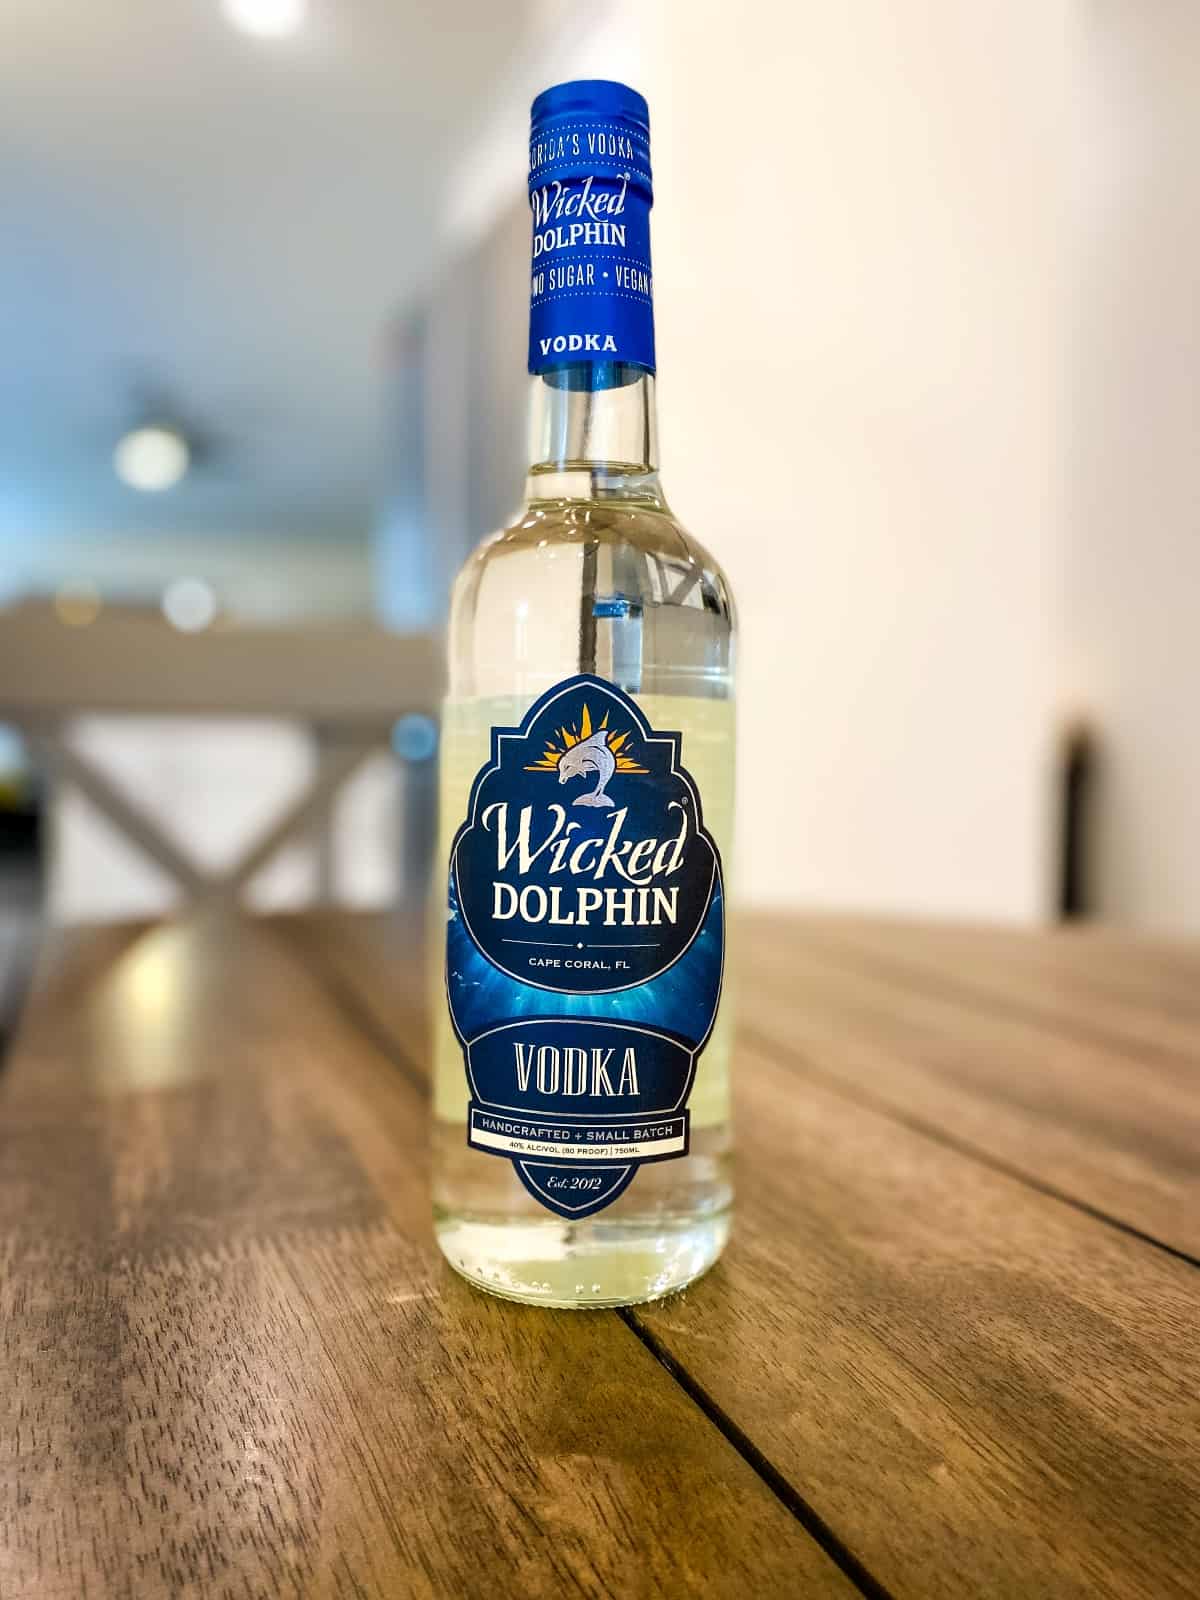 Bottle of Wicked Dolphin vodka.